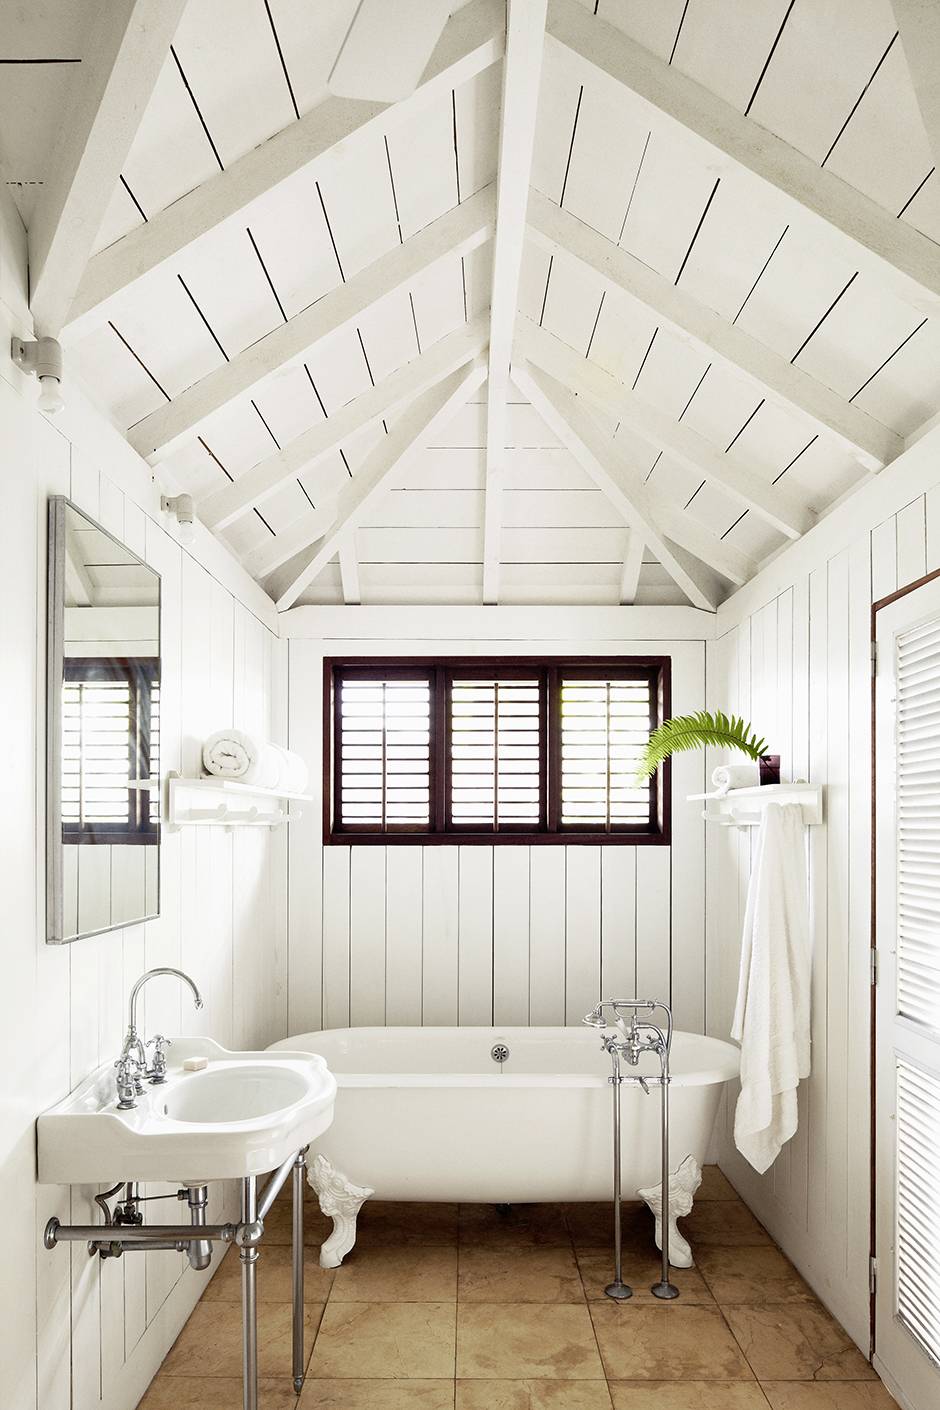 Можно ли установить в ванной комнате деревянный потолок?